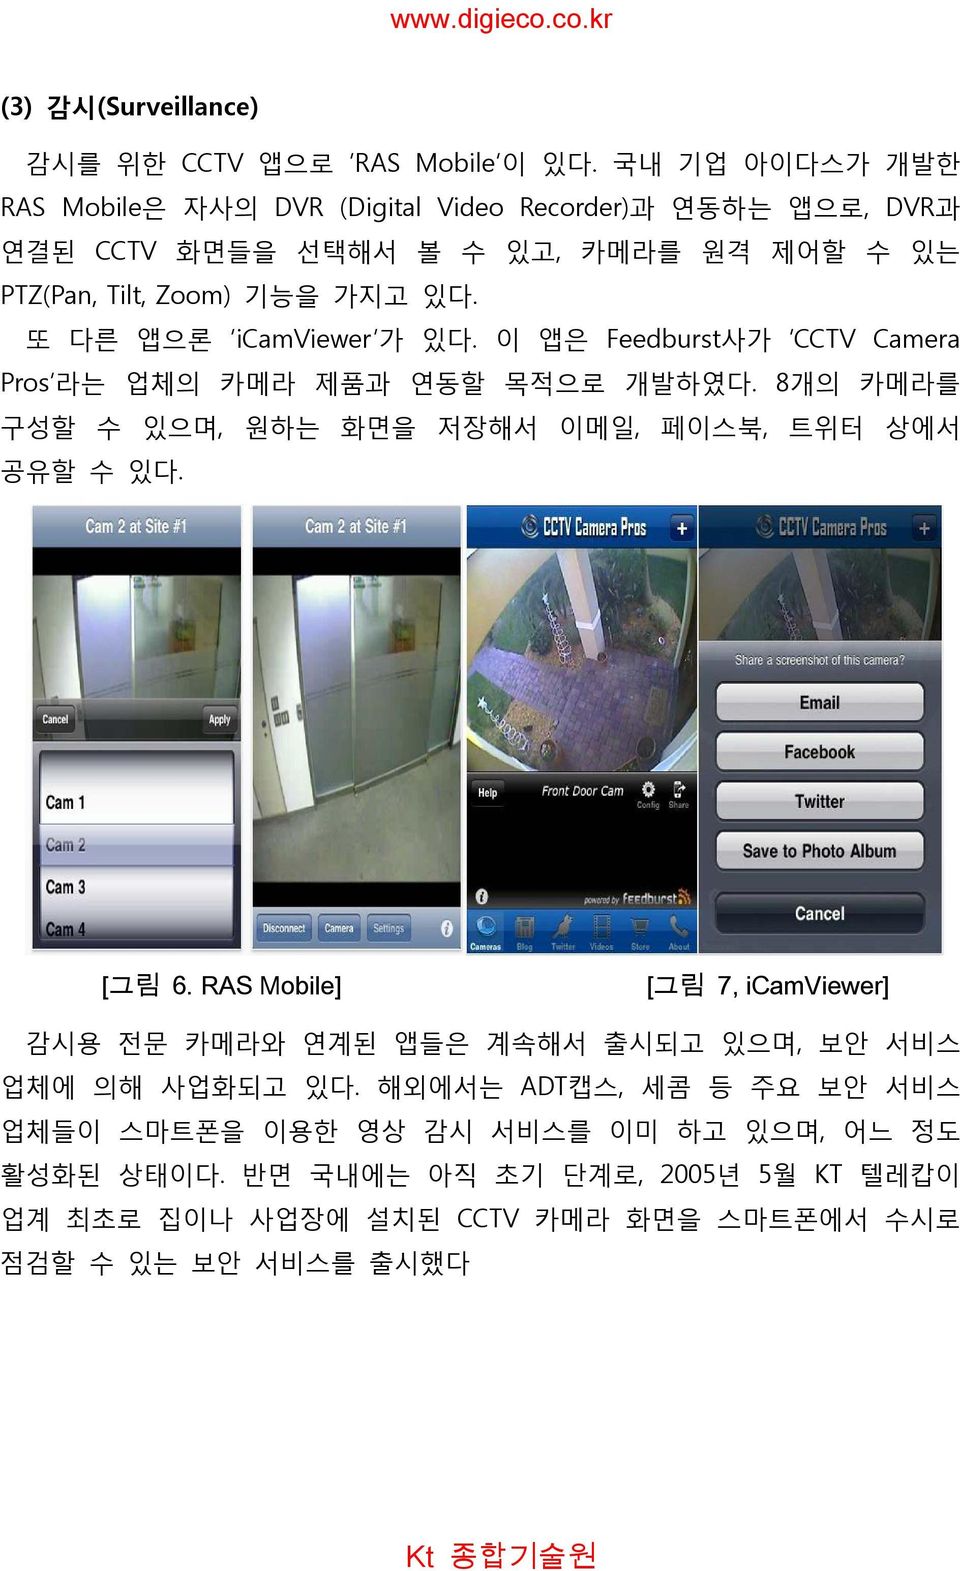 또 다른 앱으론 icamviewer 가 있다. 이 앱은 Feedburst사가 CCTV Camera Pros 라는 업체의 카메라 제품과 연동할 목적으로 개발하였다. 8개의 카메라를 구성할 수 있으며, 원하는 화면을 저장해서 이메일, 페이스북, 트위터 상에서 공유할 수 있다. [그림 6.